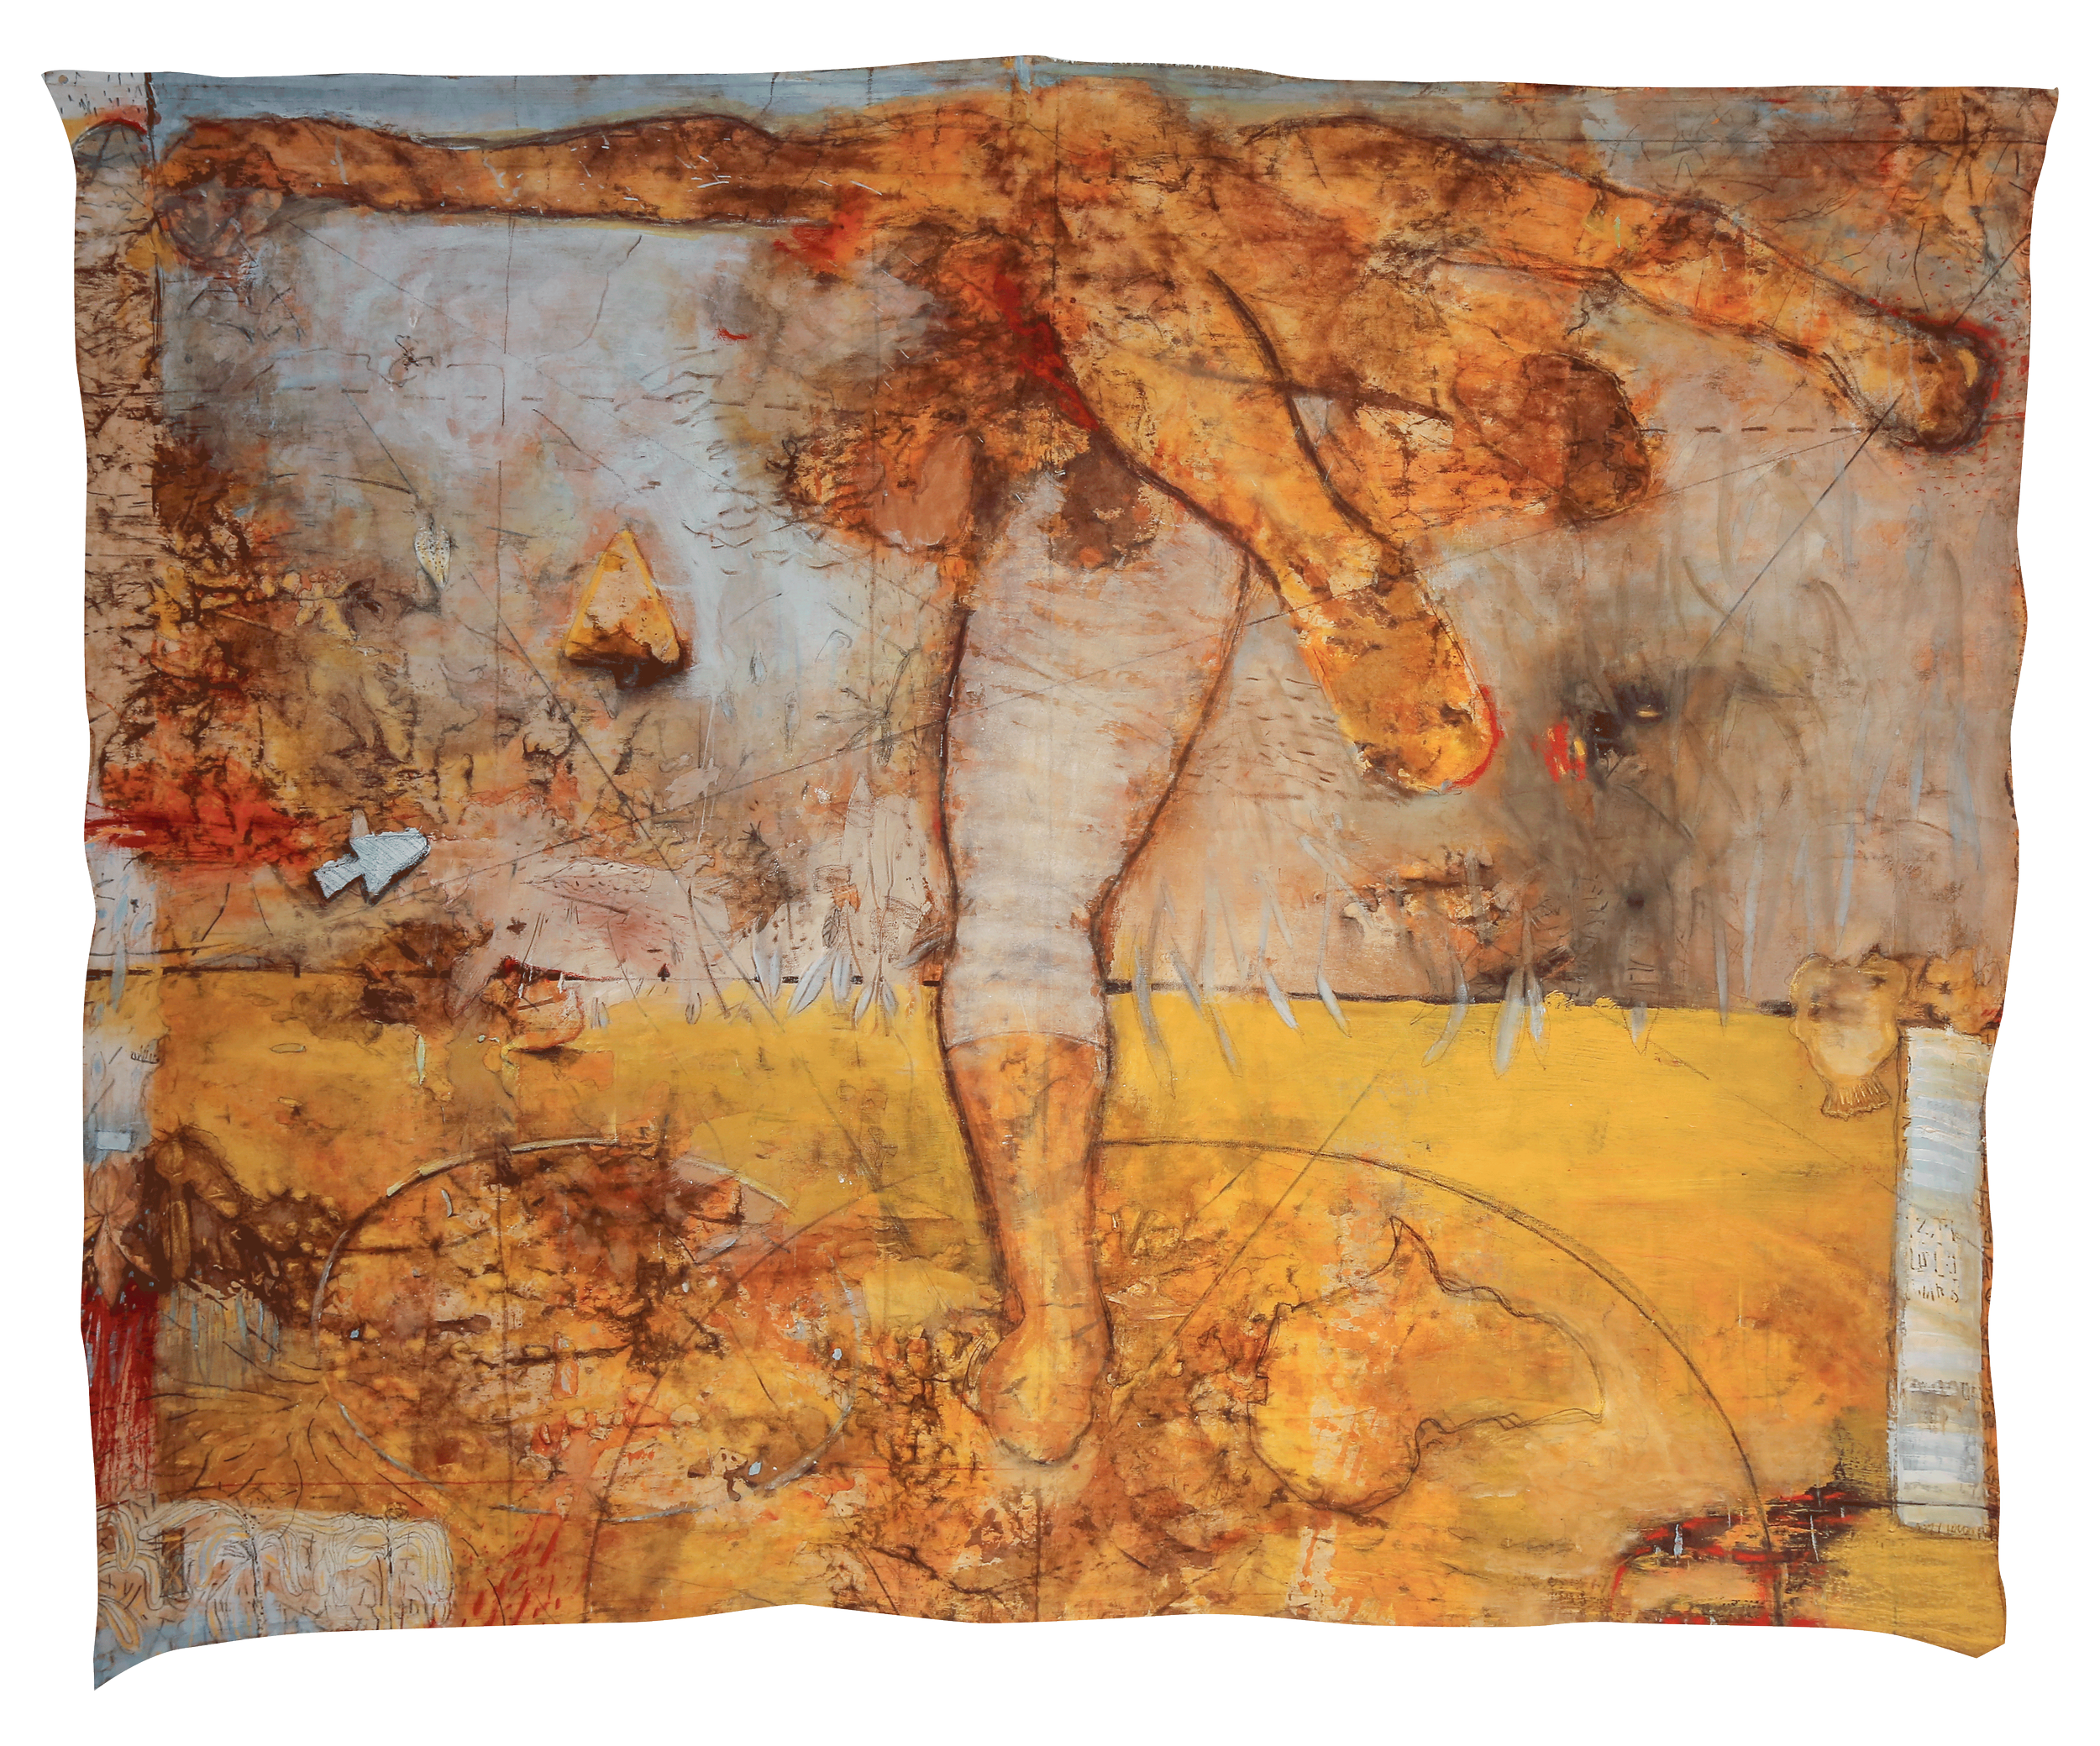 La danse du guerrier (The Warrior's dance), 2022.
guerrier), 2022, Acrylique, pigments naturels, encre, graphite sur toile, 205 x 163 cm